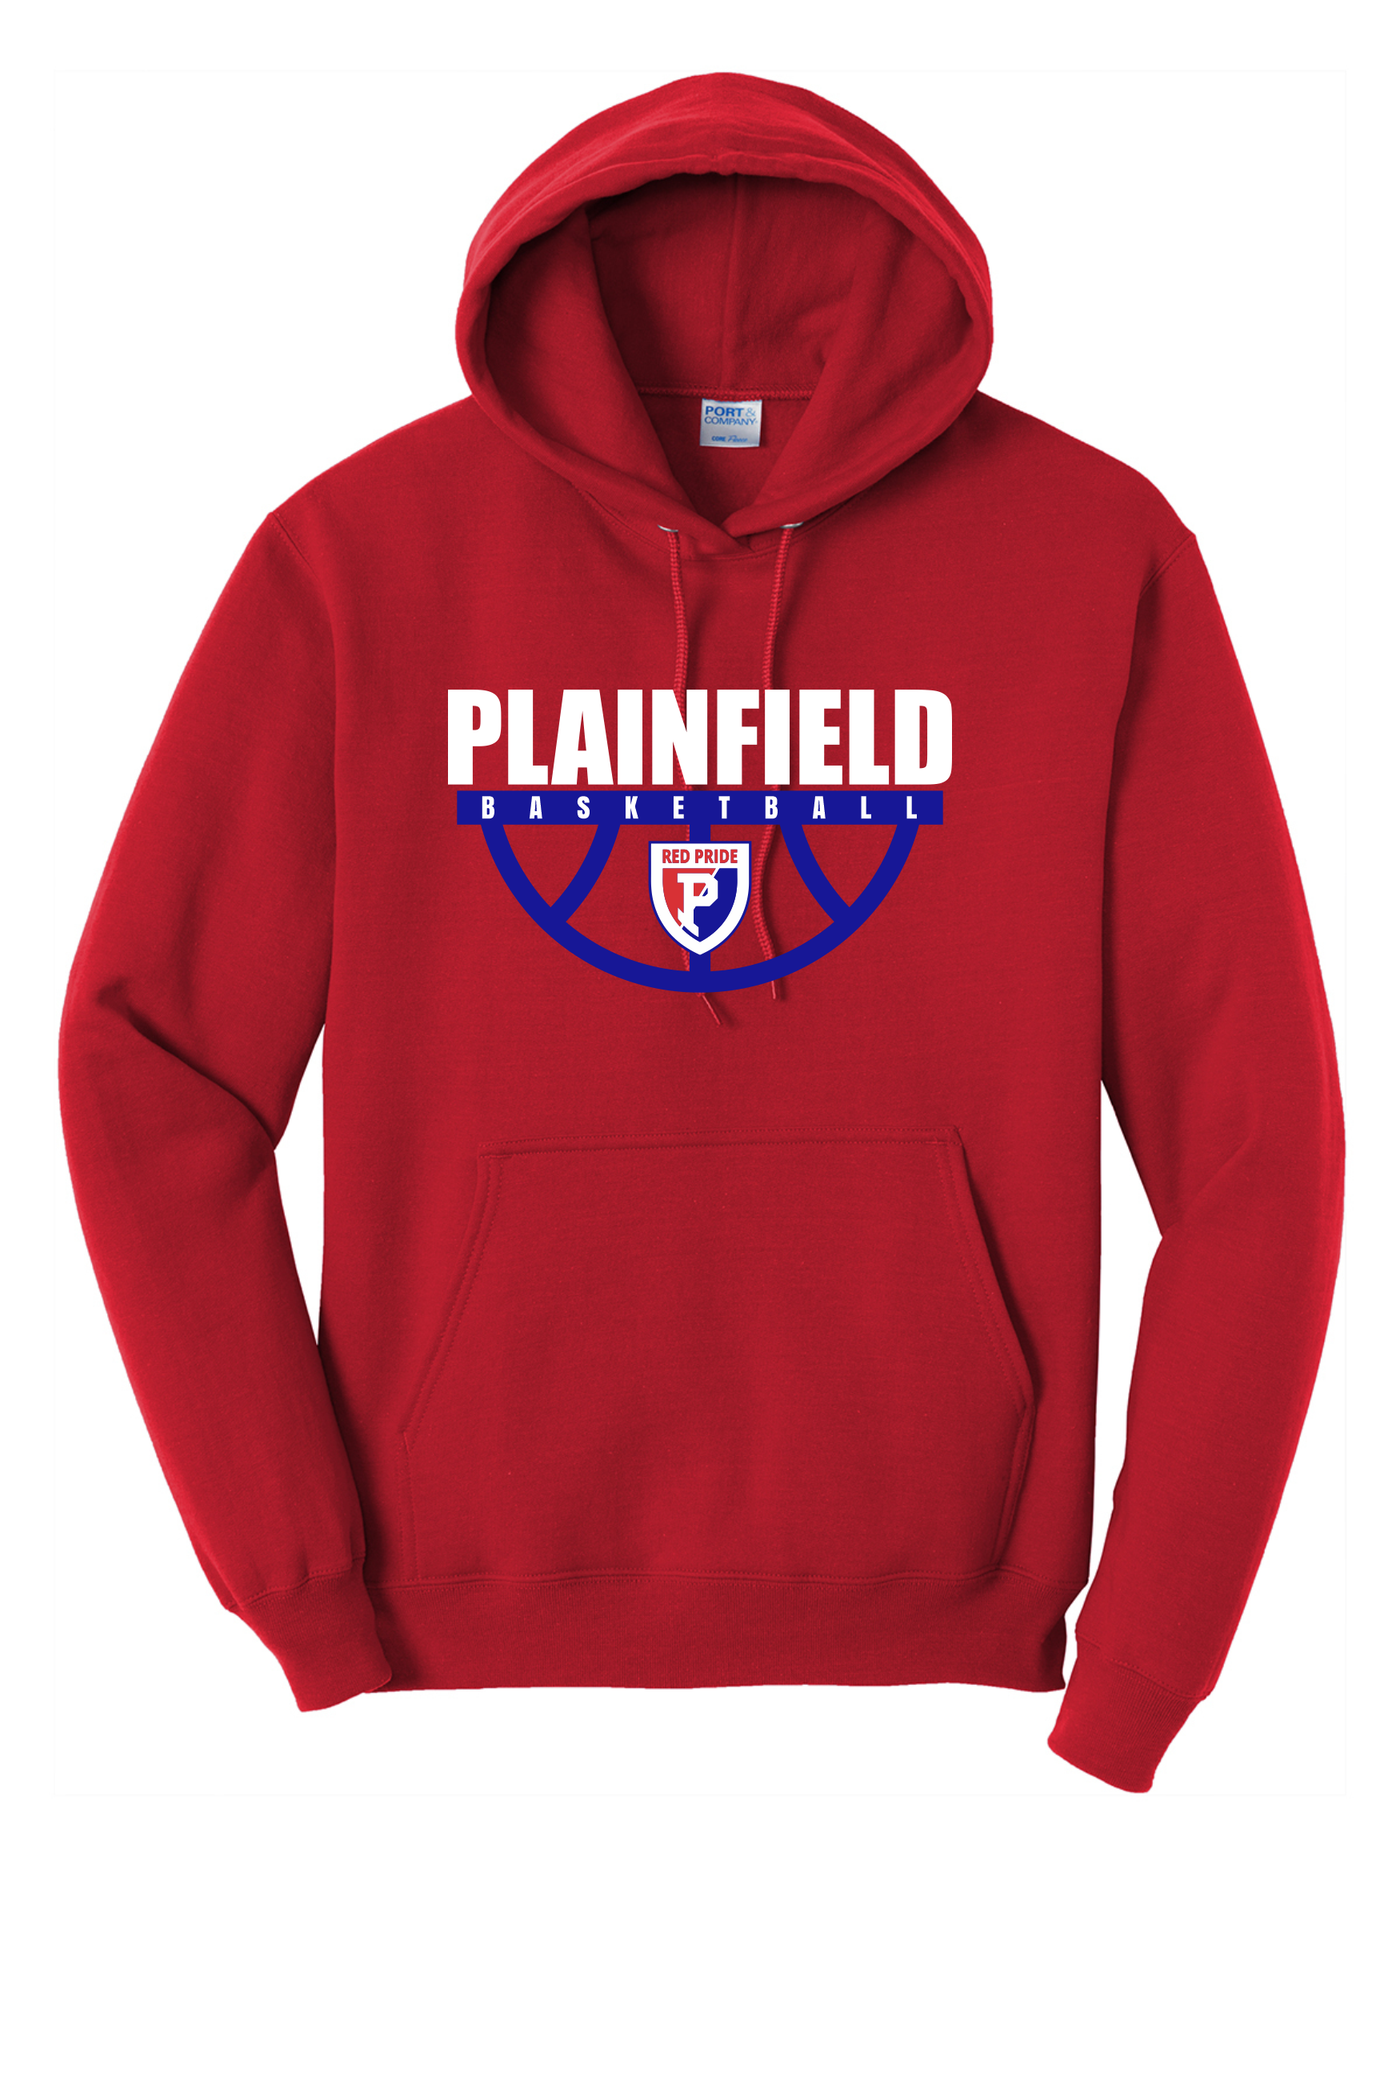 Plainfield Hooded Sweatshirt - H1 ADULT - Y&S Designs, LLC